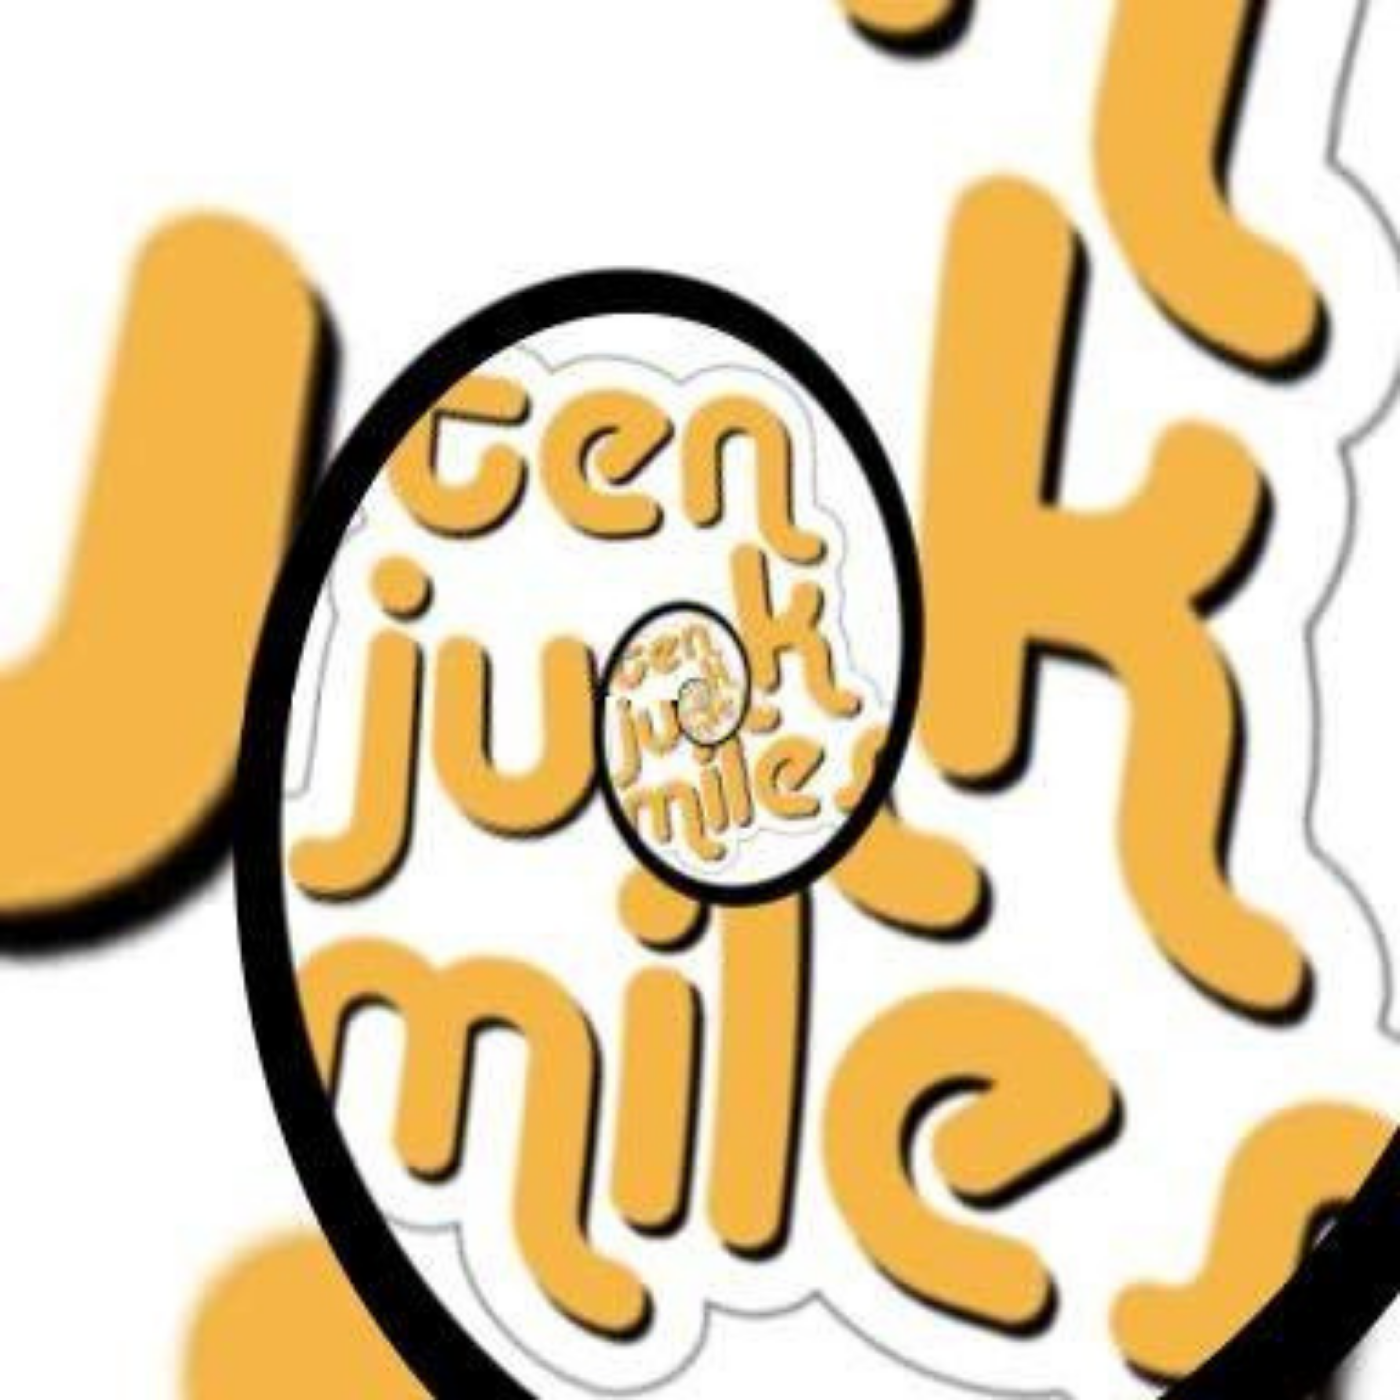 Ten Junk Miles